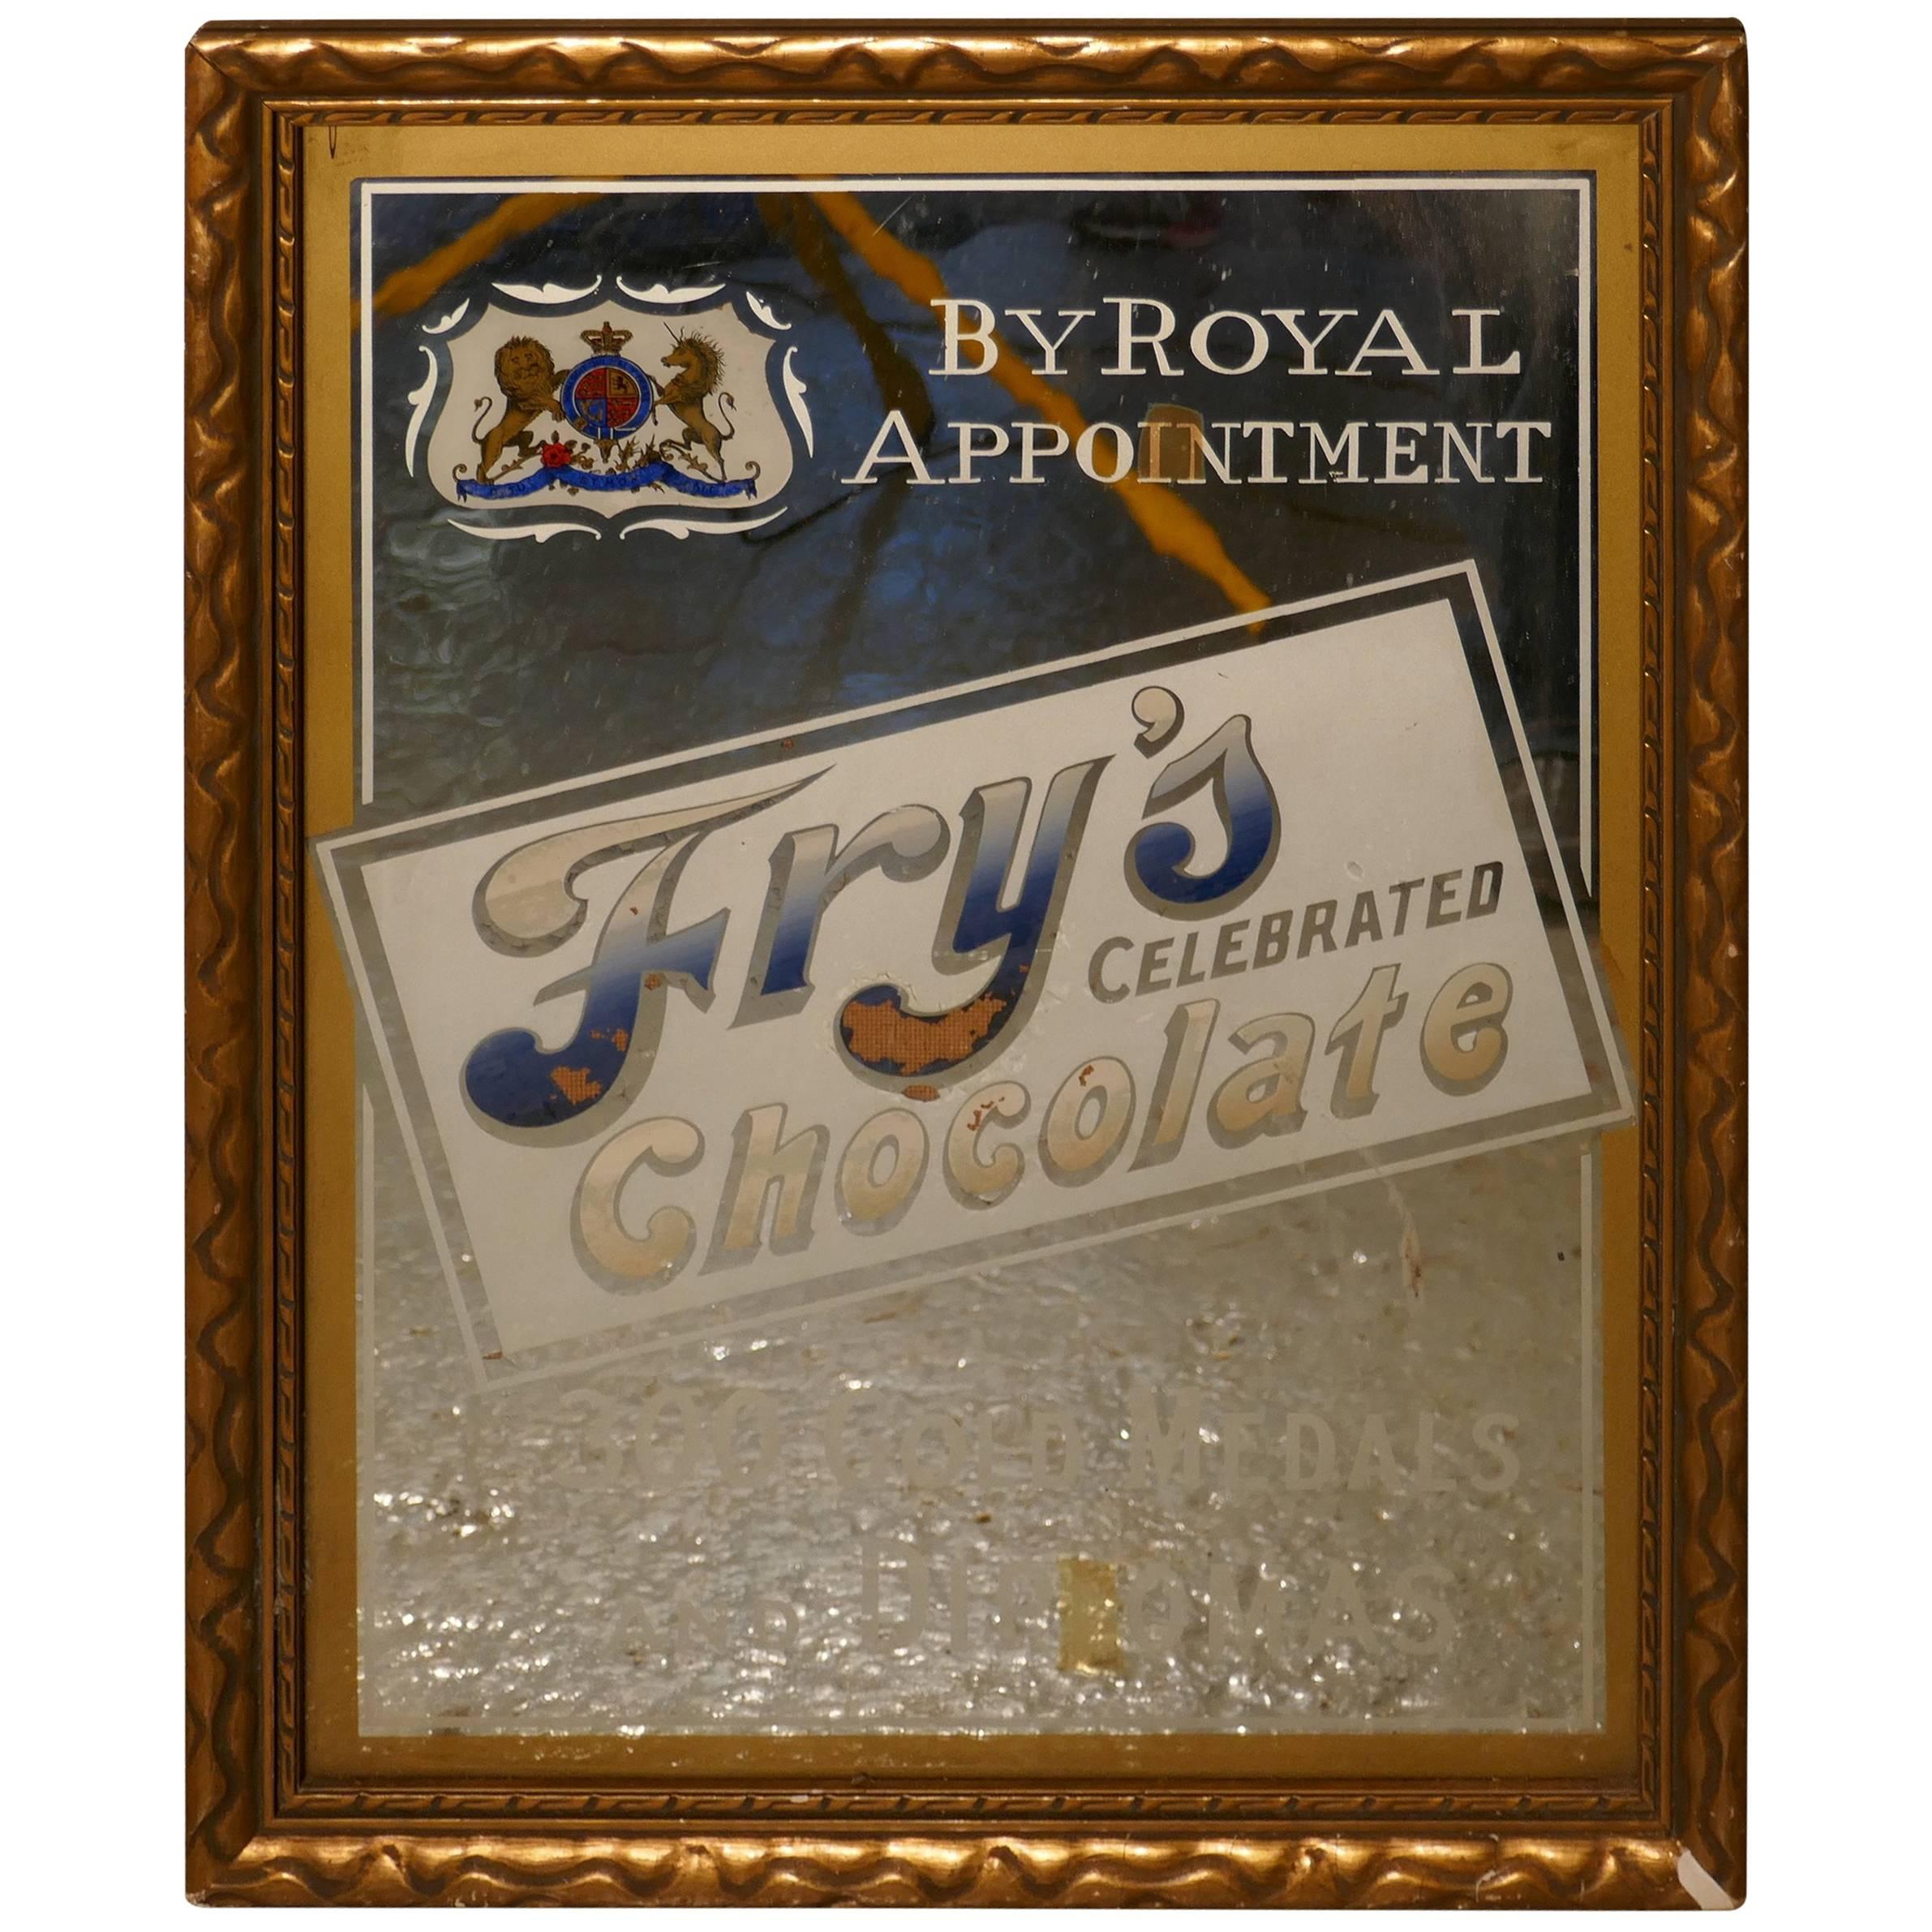 Fry's Celebrated Chocolate, Werbespiegel von Royal Appointment